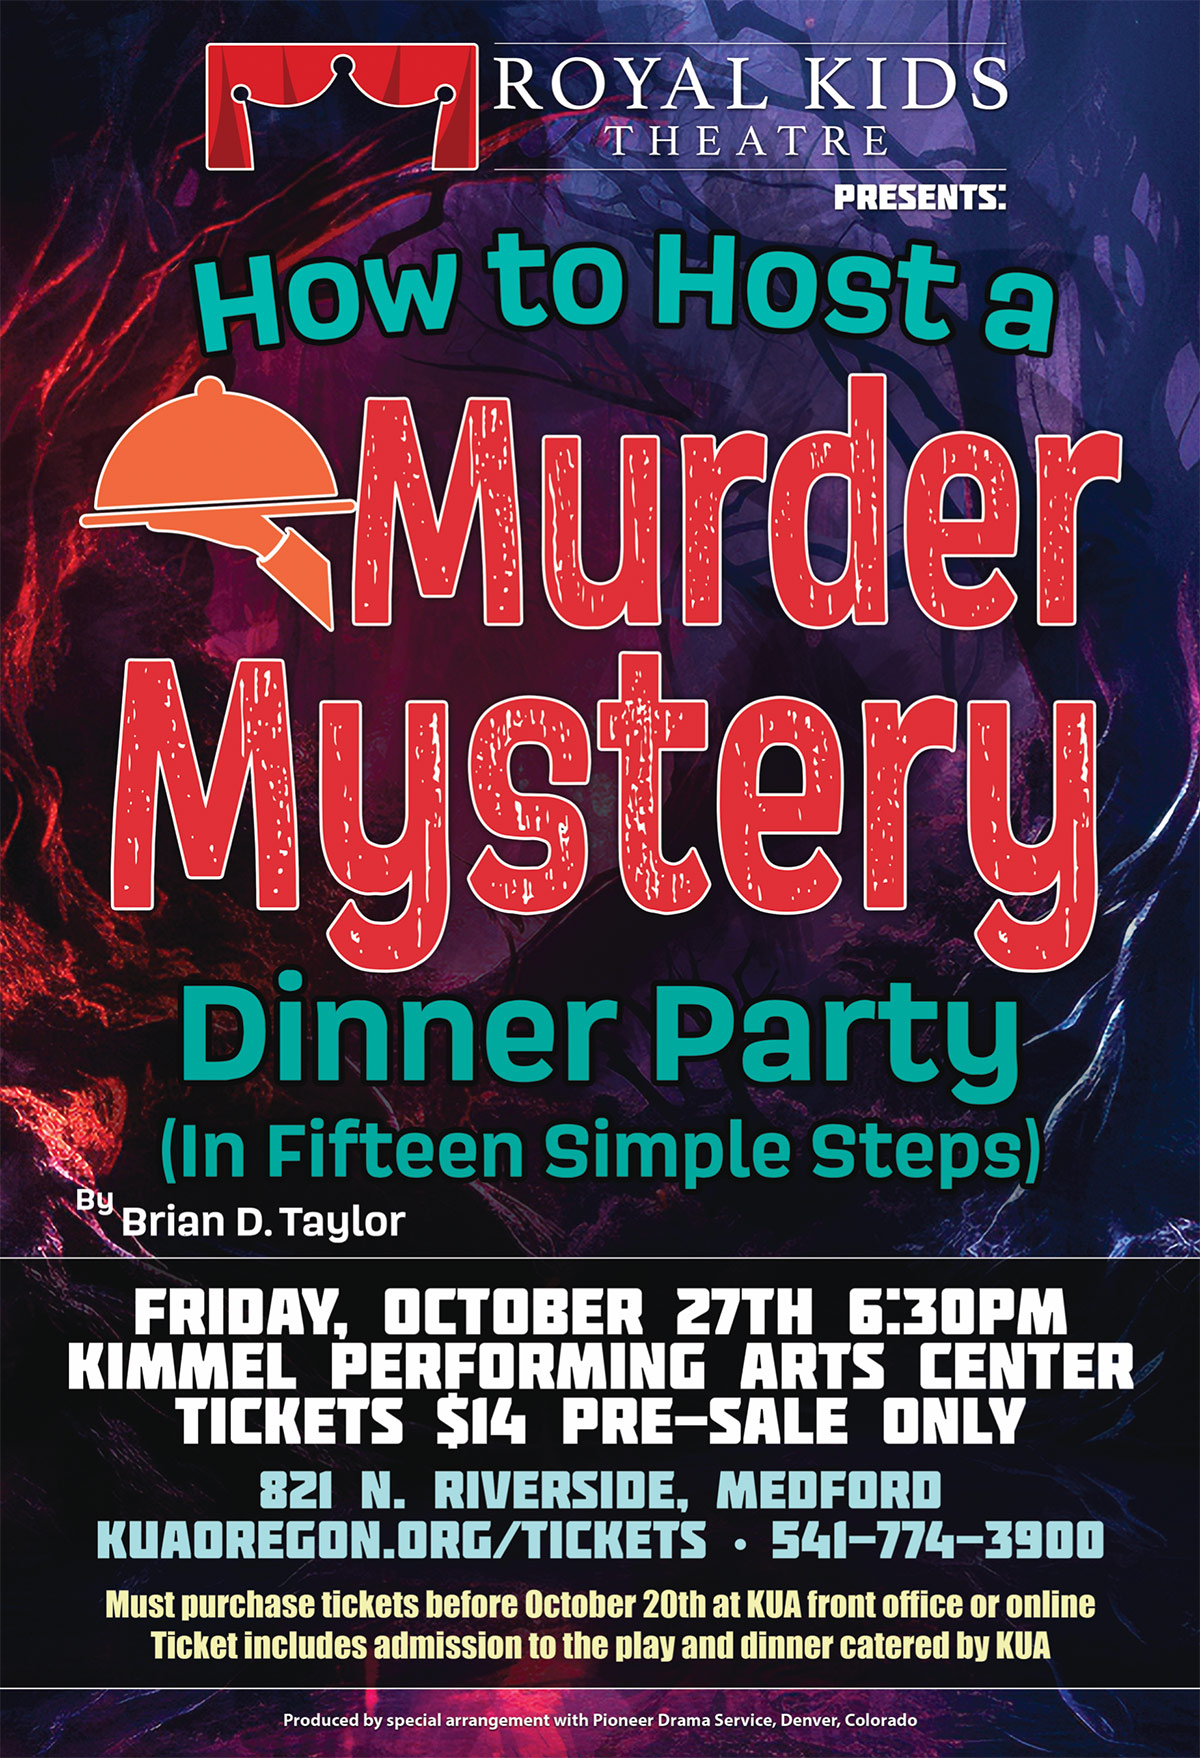 Murder Mystery Dinner Theater - Riverside Entertainment